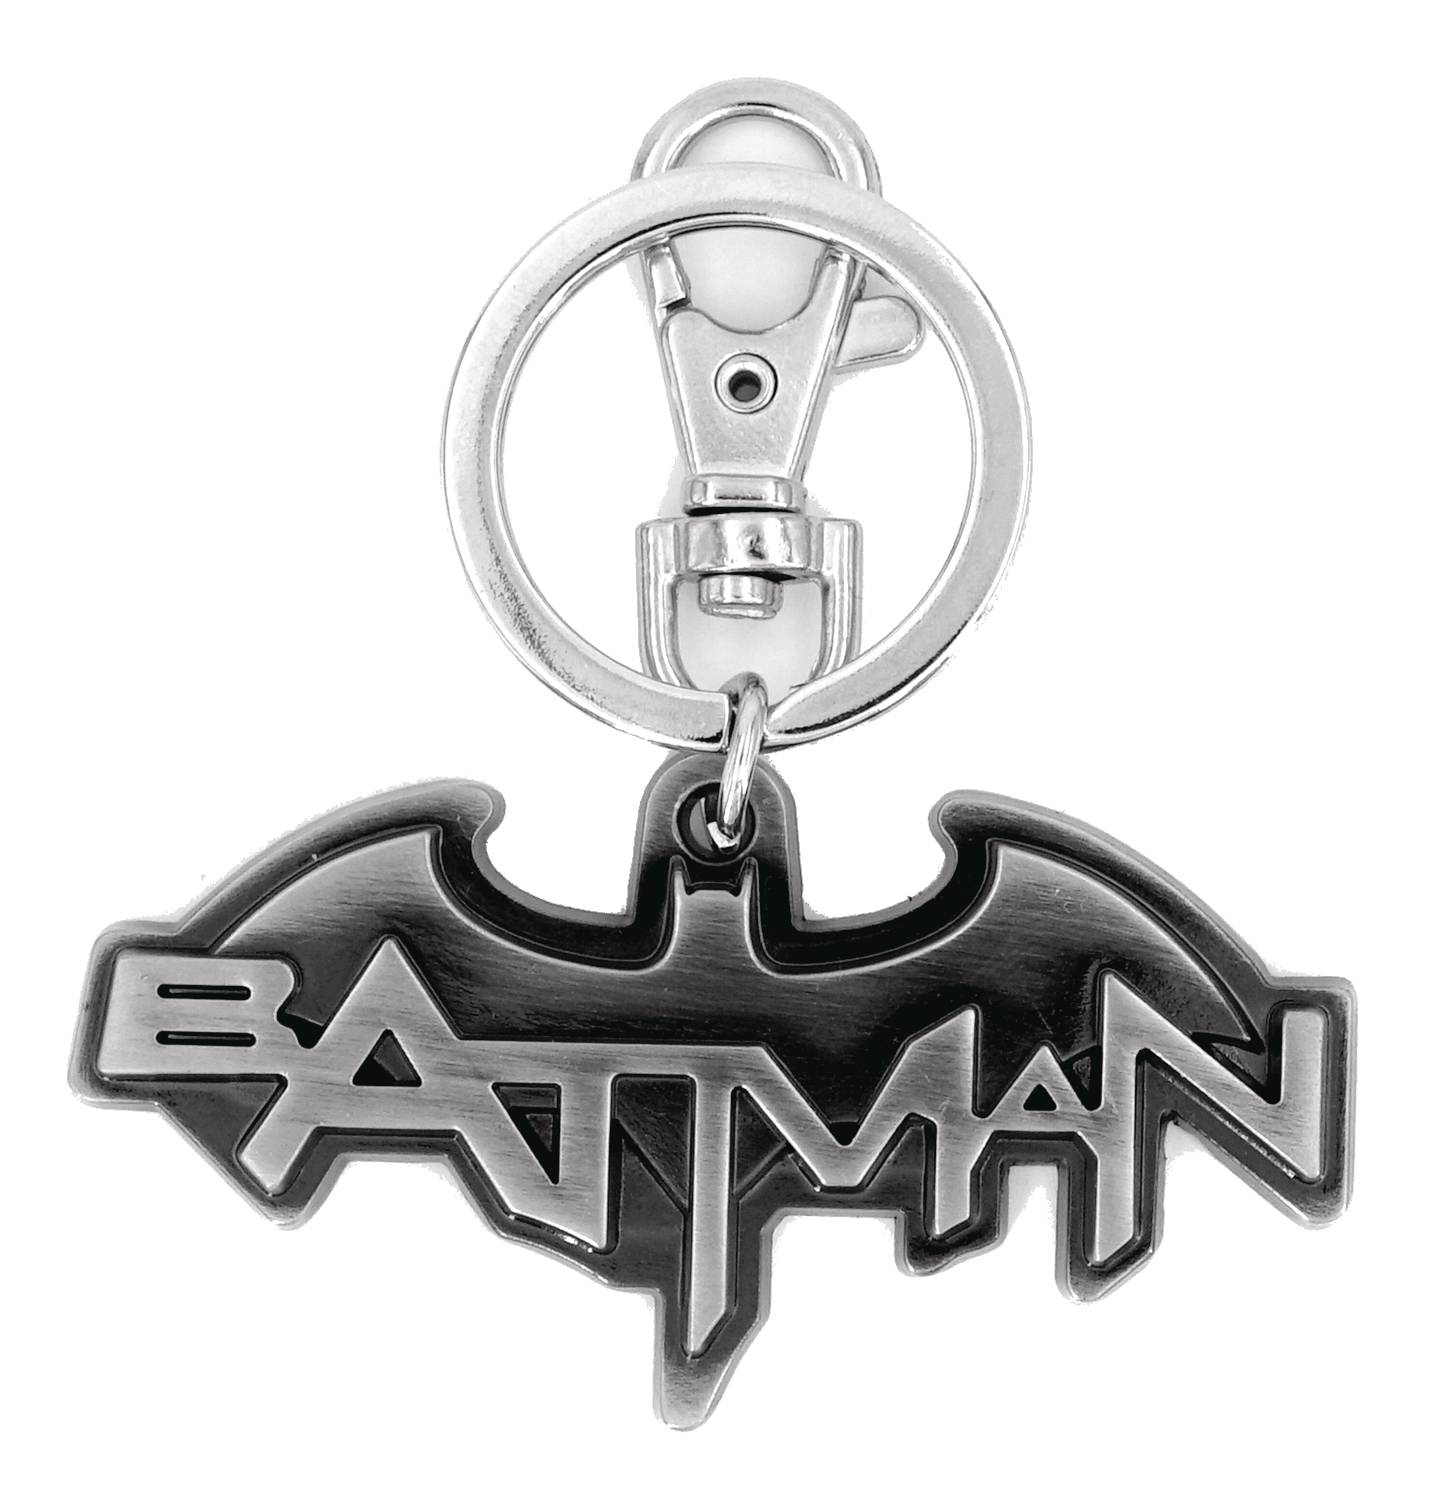 DC Heroes Batman Logo Pewter Key Ring